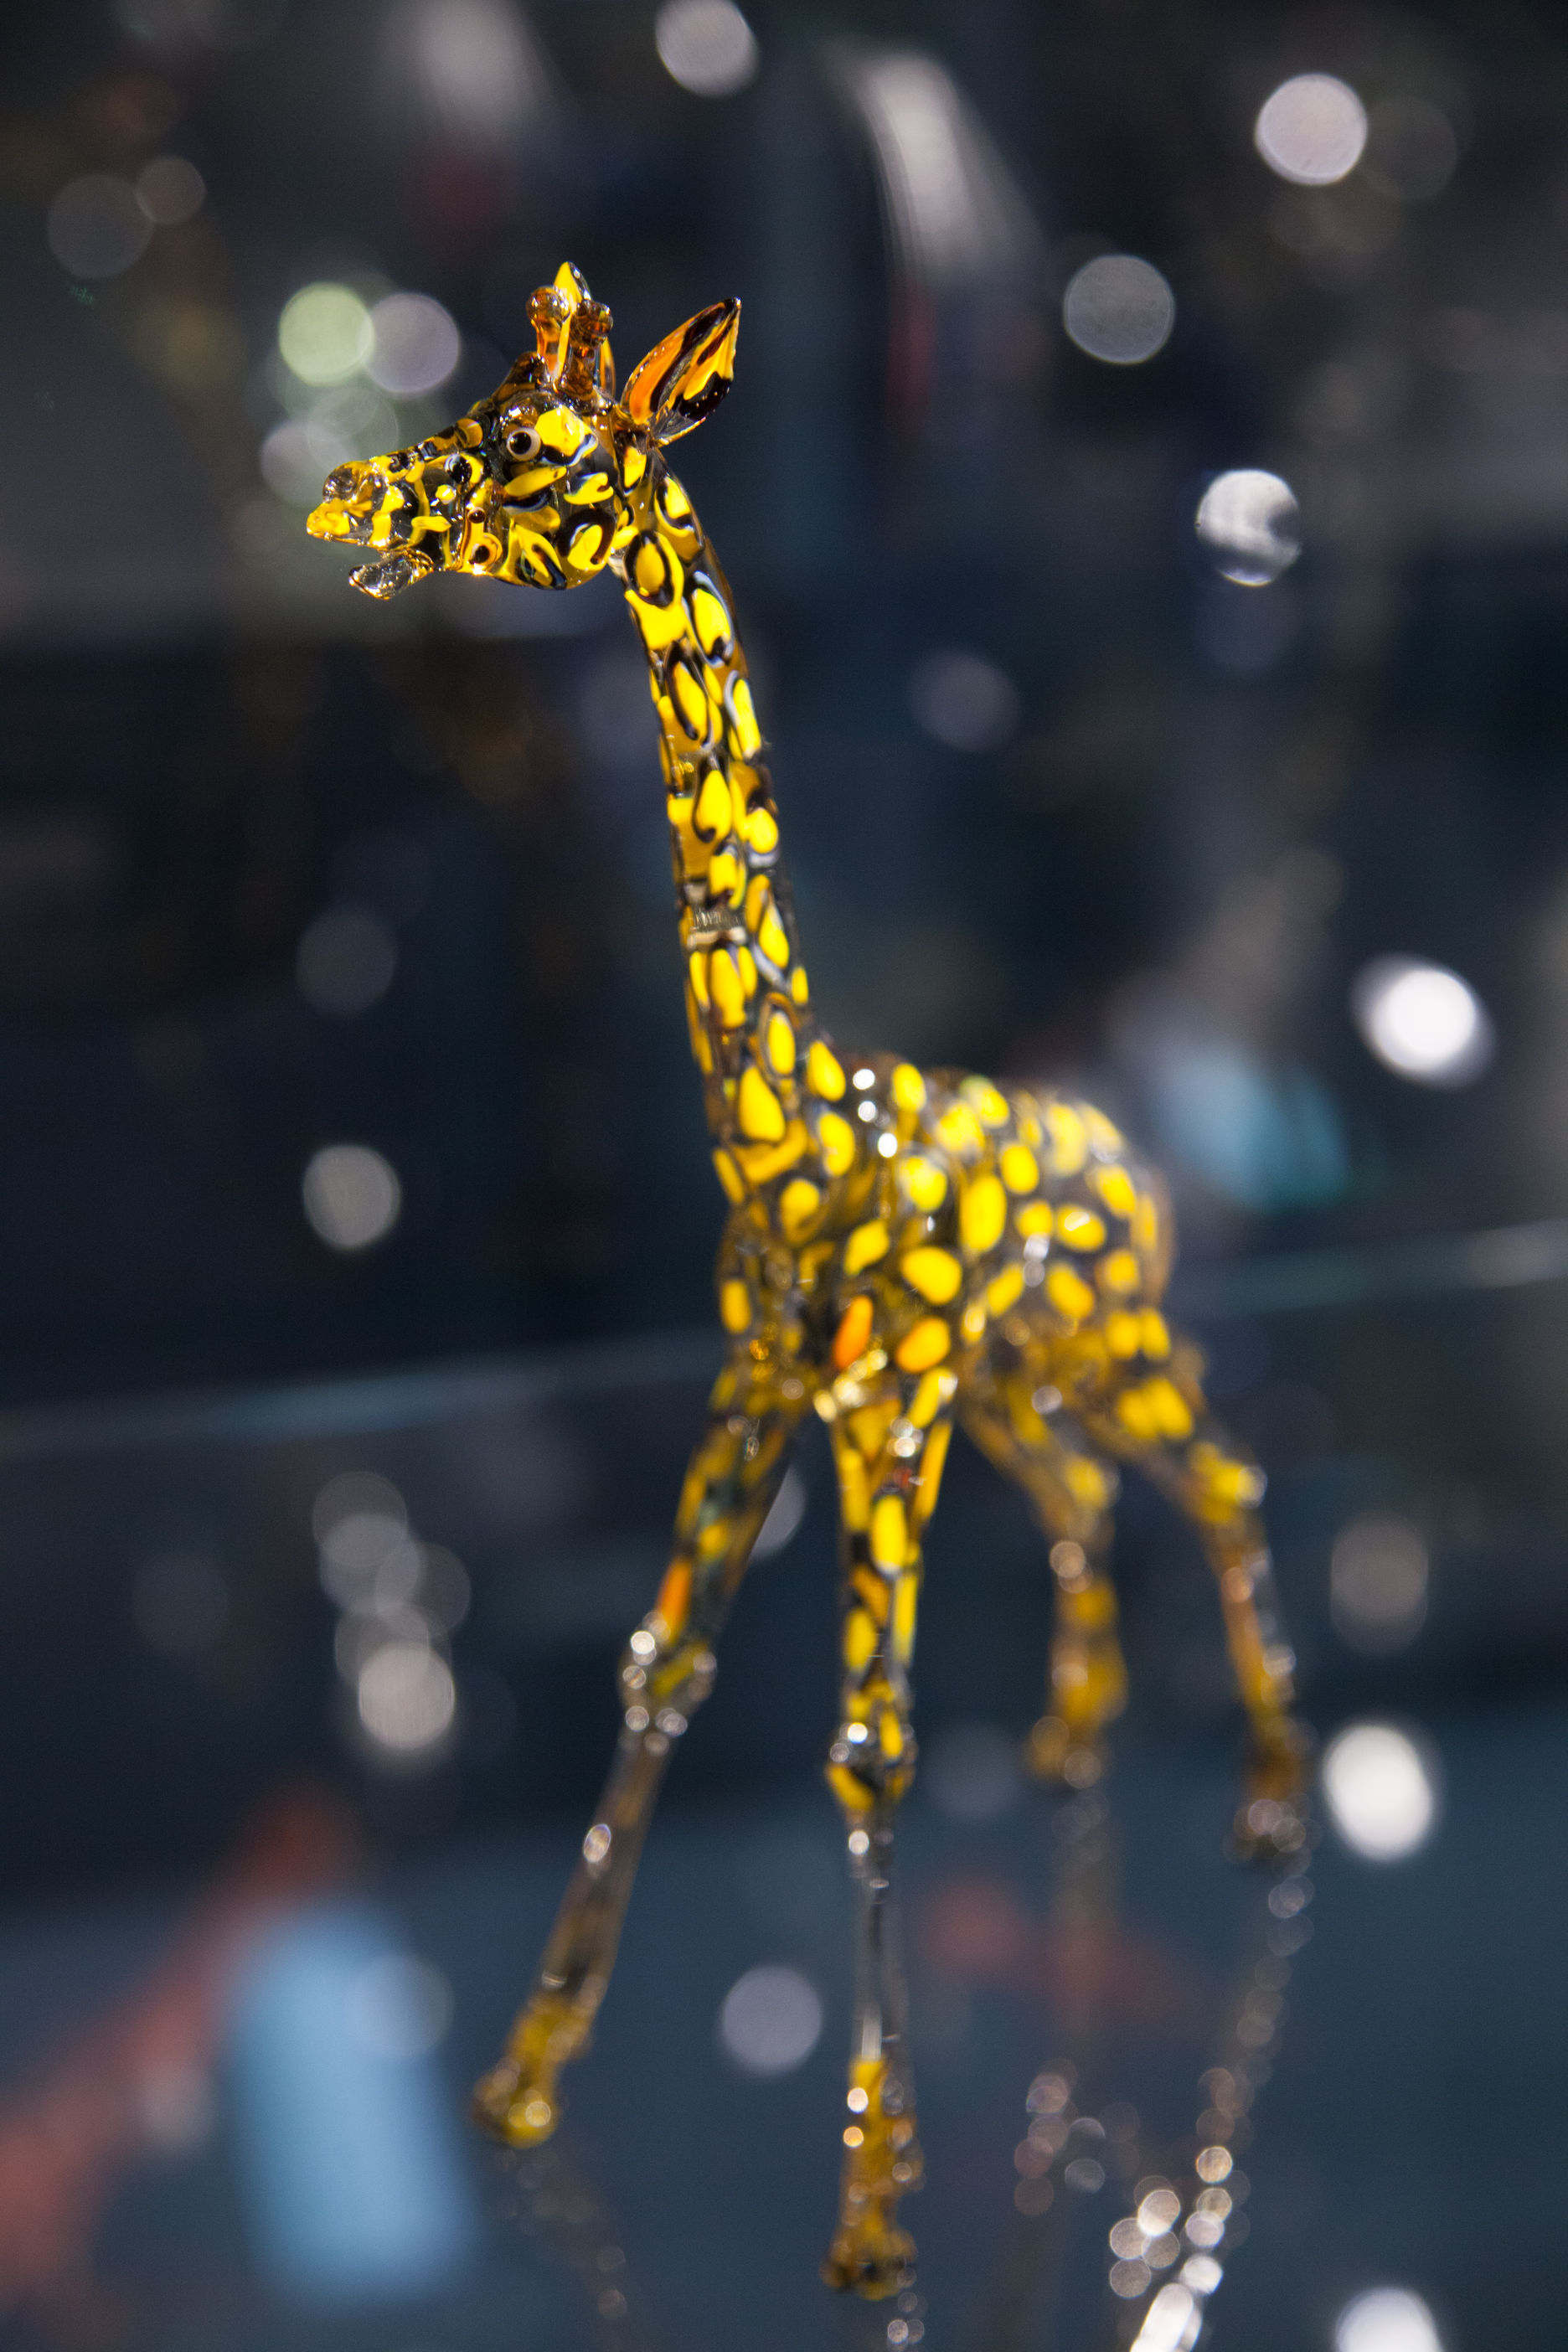 Giraffe_Walter_Boehm-Beck-1947.jpg